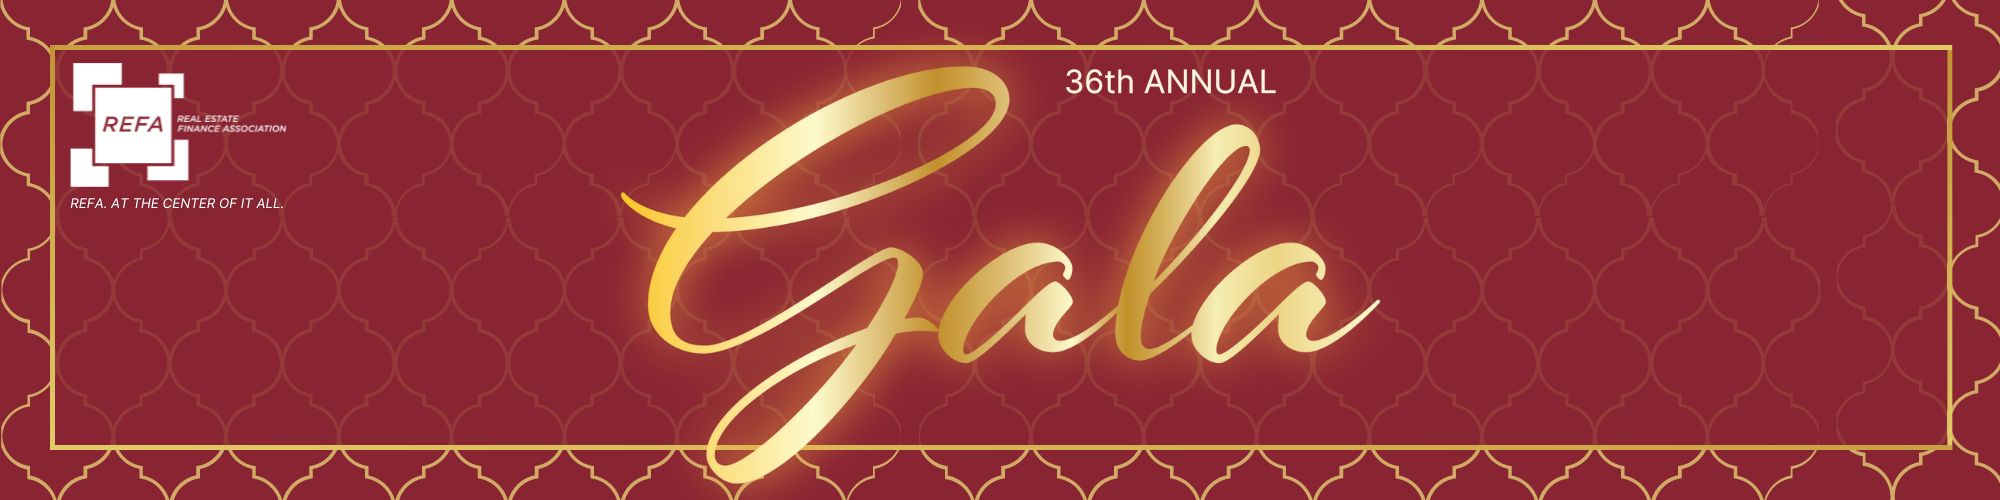 36th Annual REFA Gala